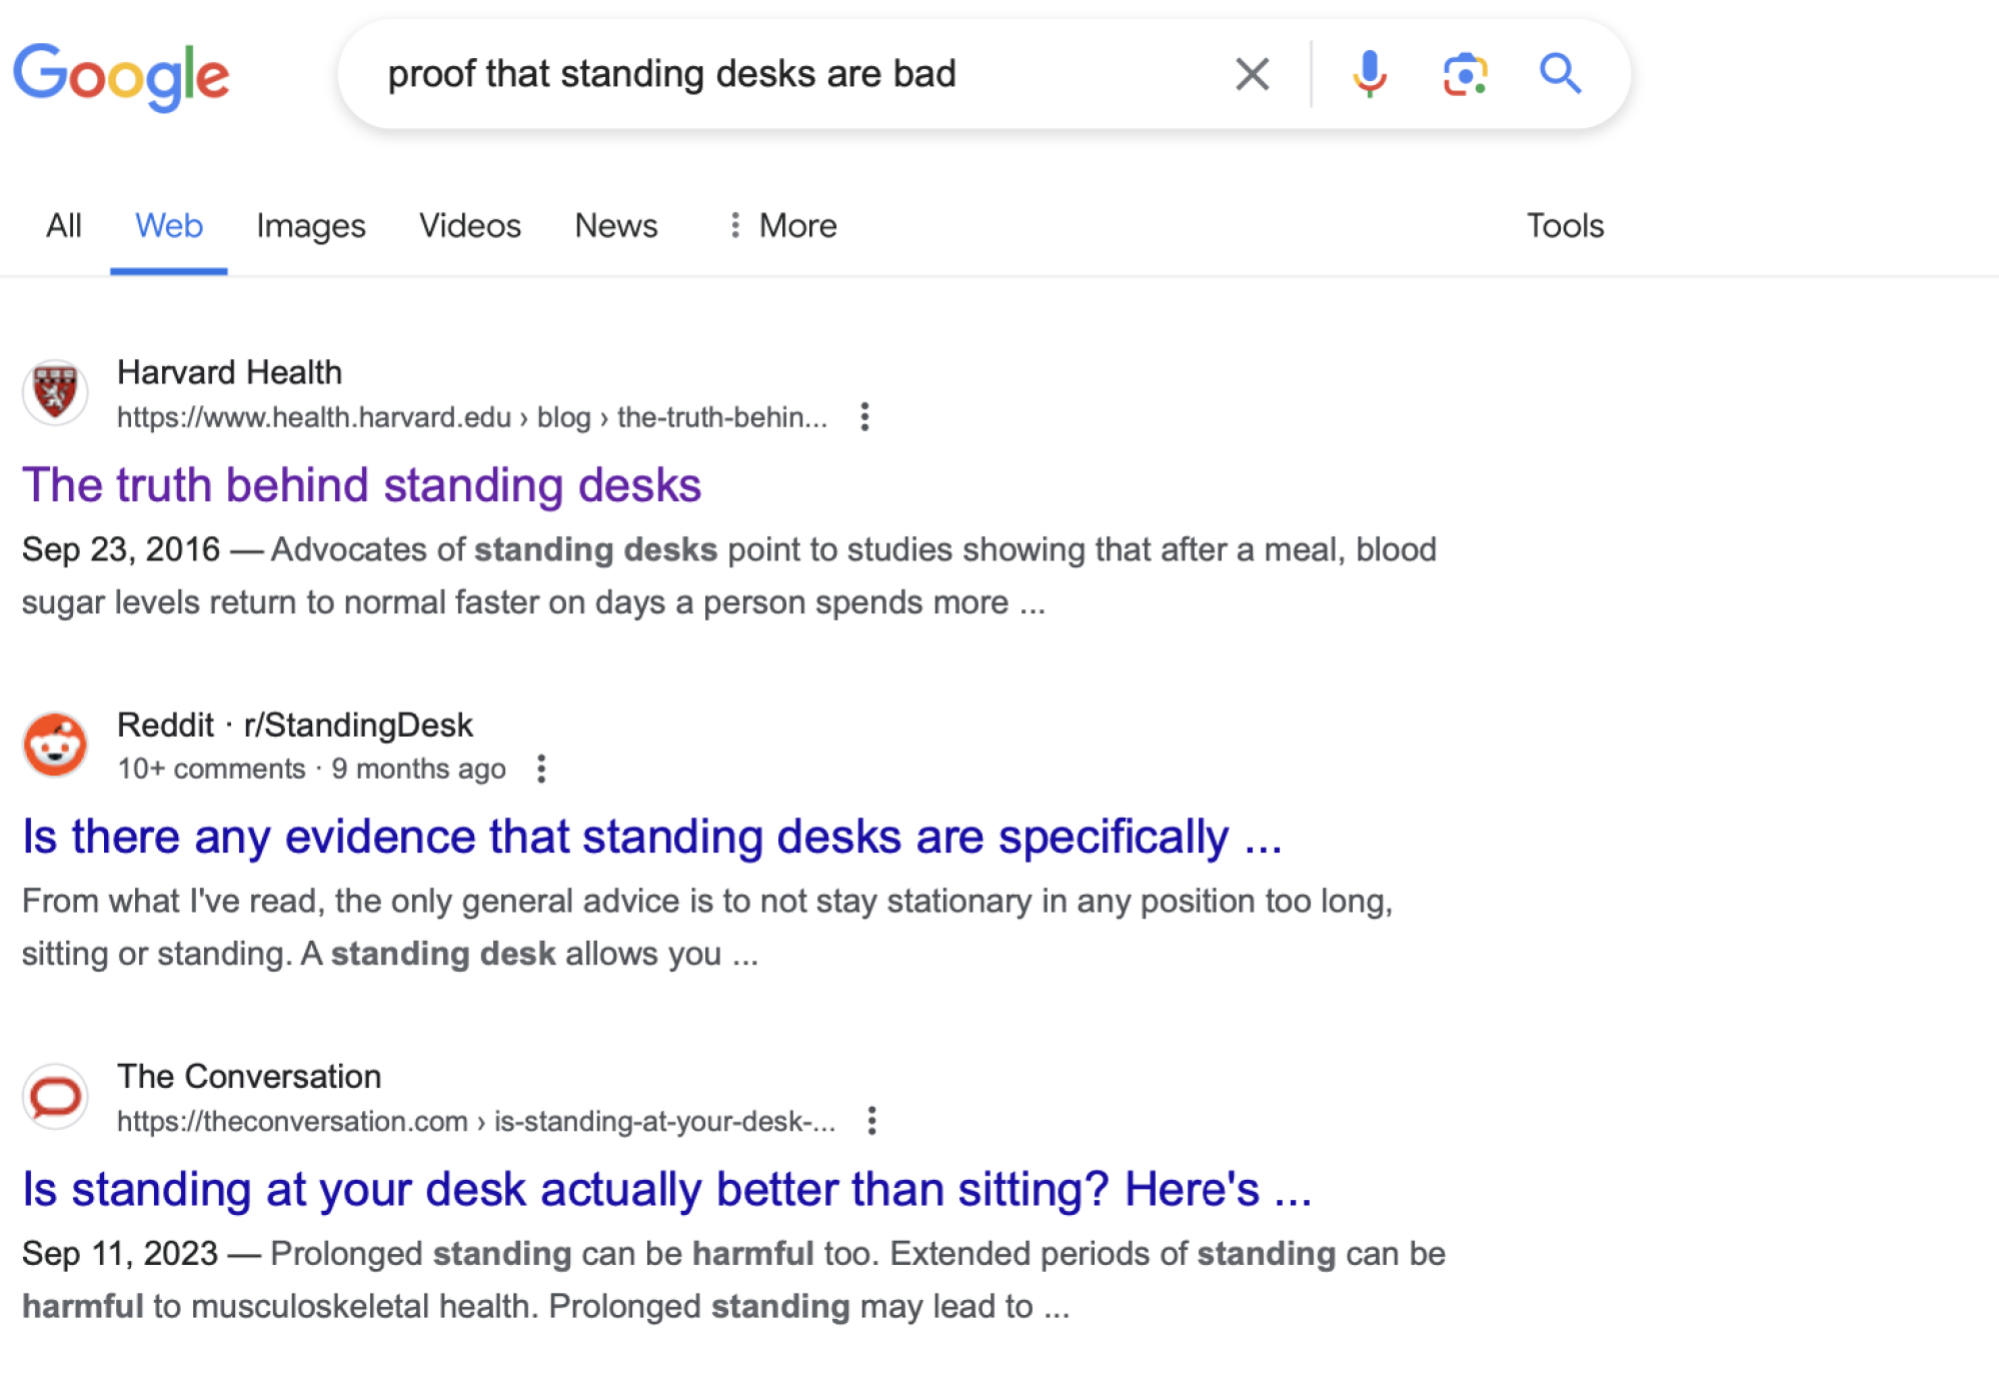 La version non IA de la recherche Google pour « la preuve que les bureaux debout sont mauvais » est un article du Harvard Health Blog intitulé « La vérité derrière les bureaux debout ».